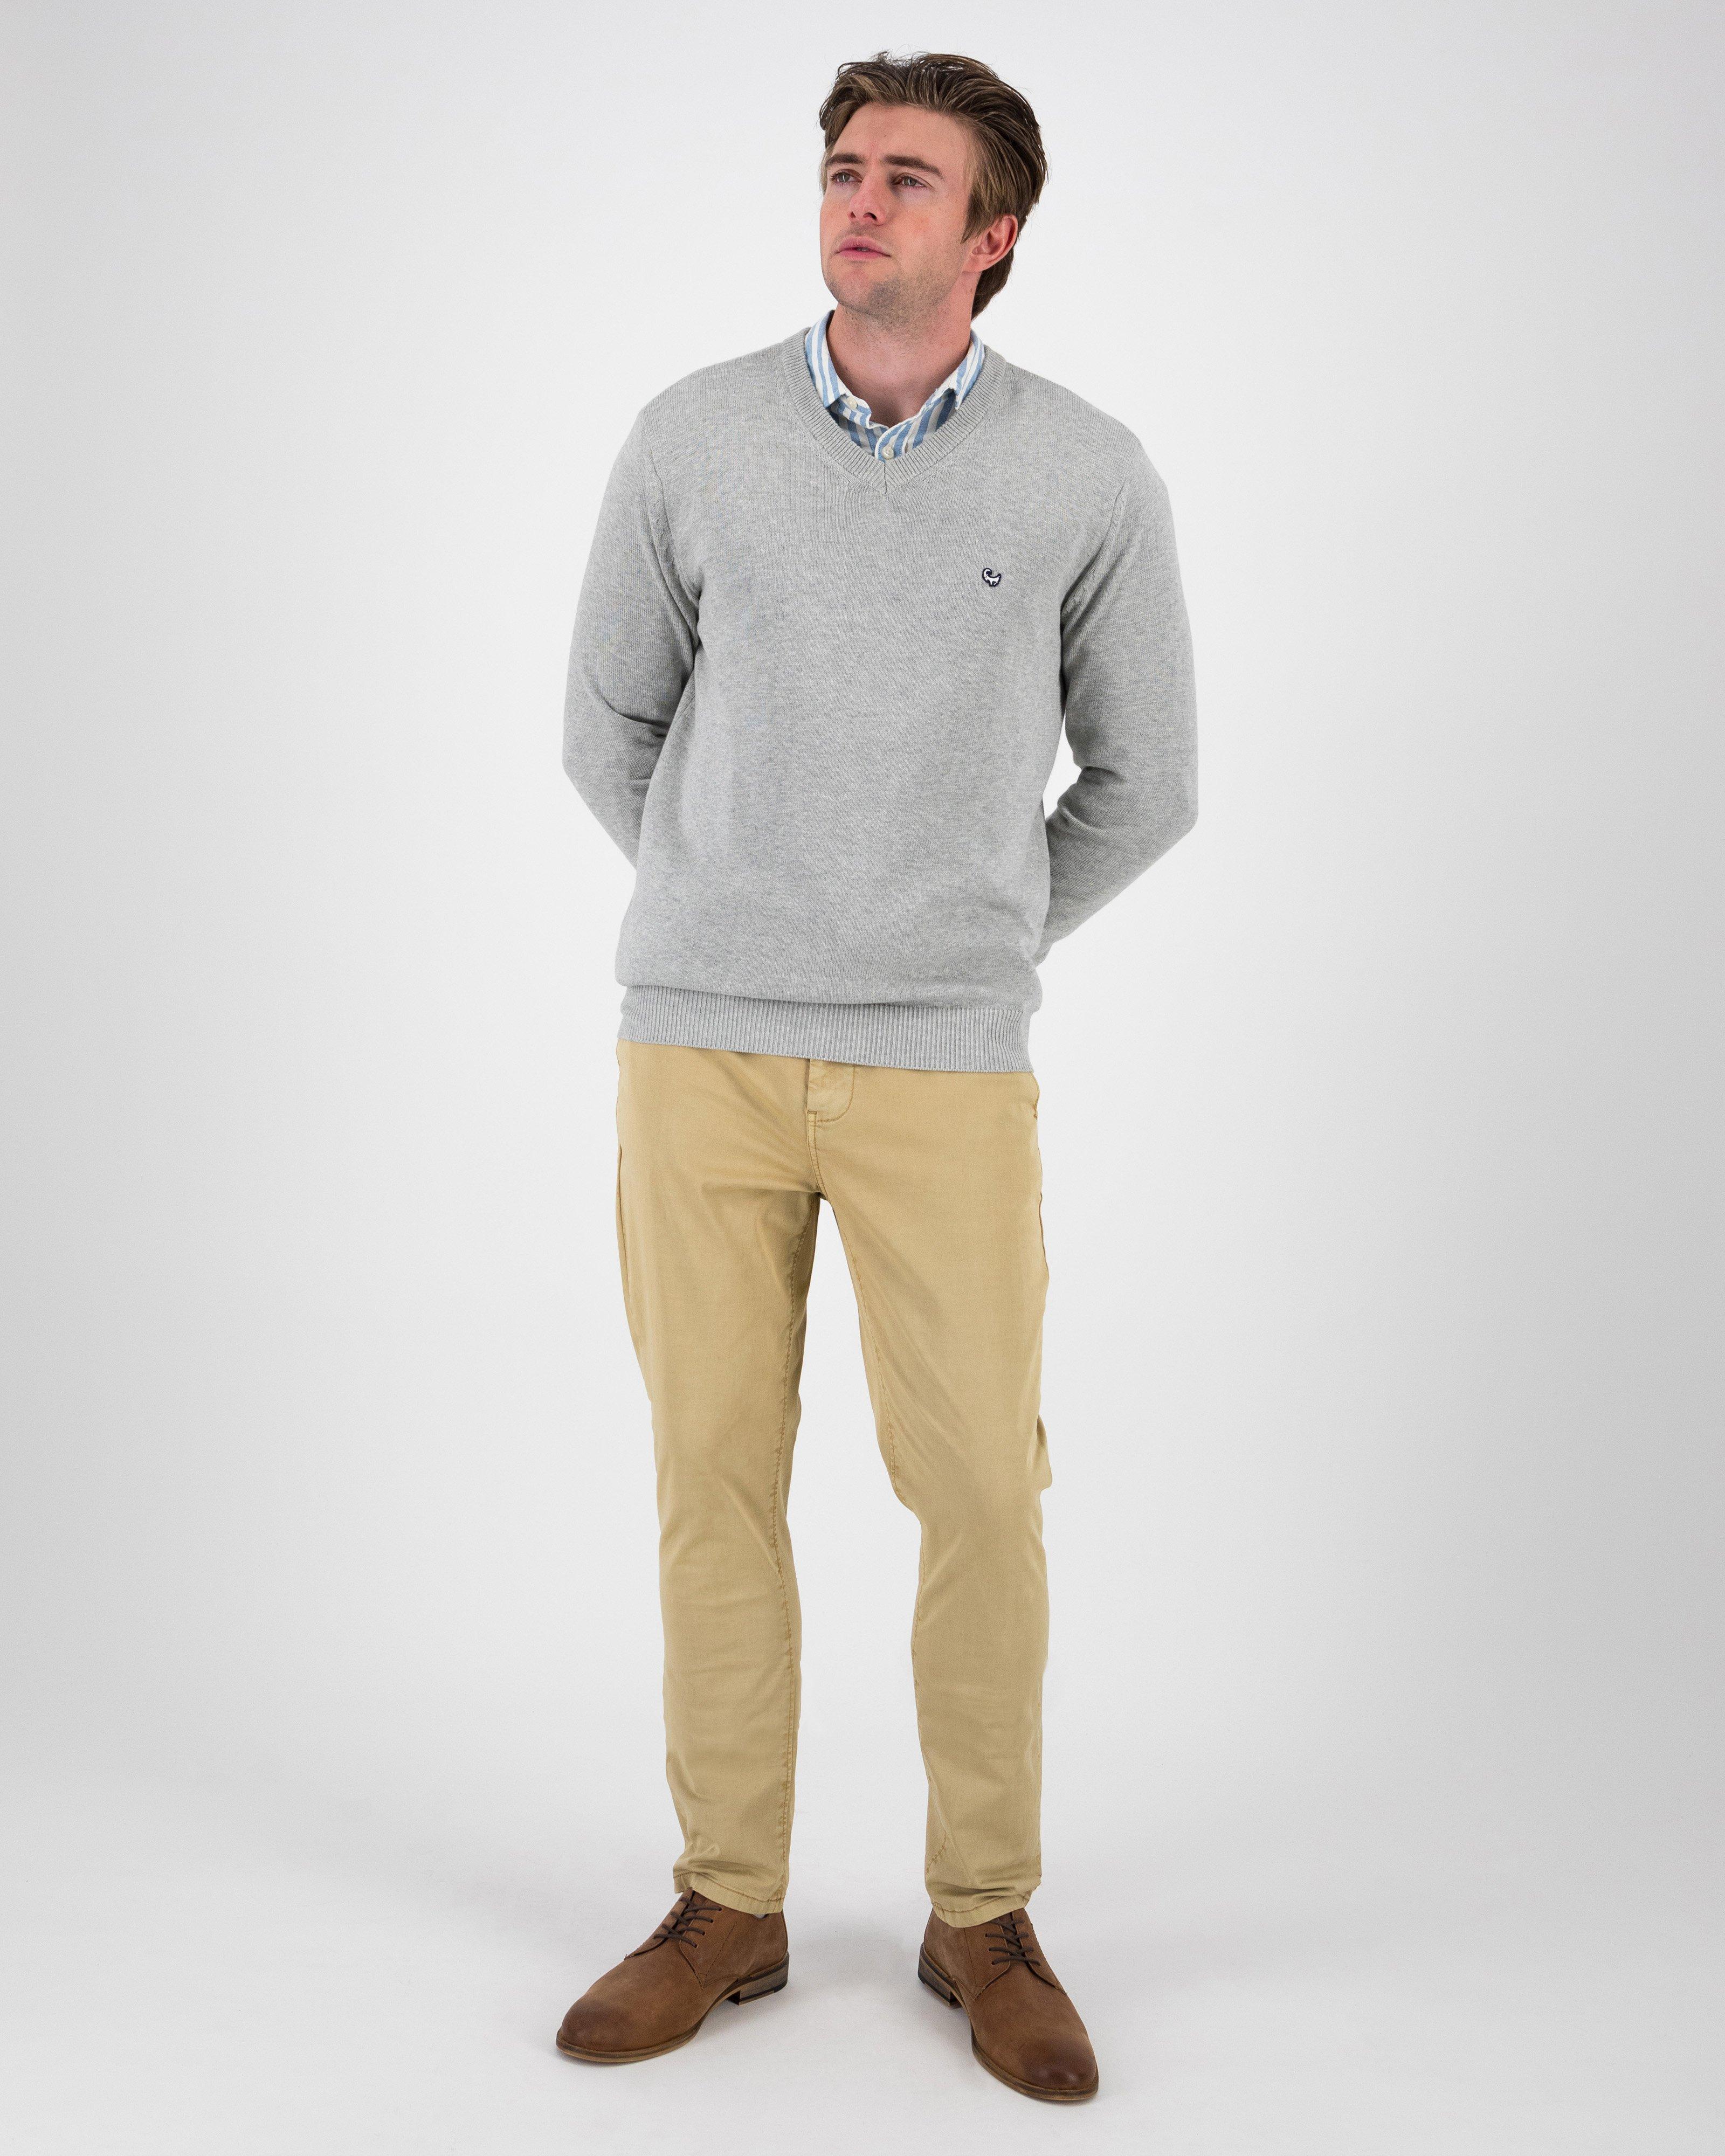 Men’s Riley Knit Pullover -  Light Grey